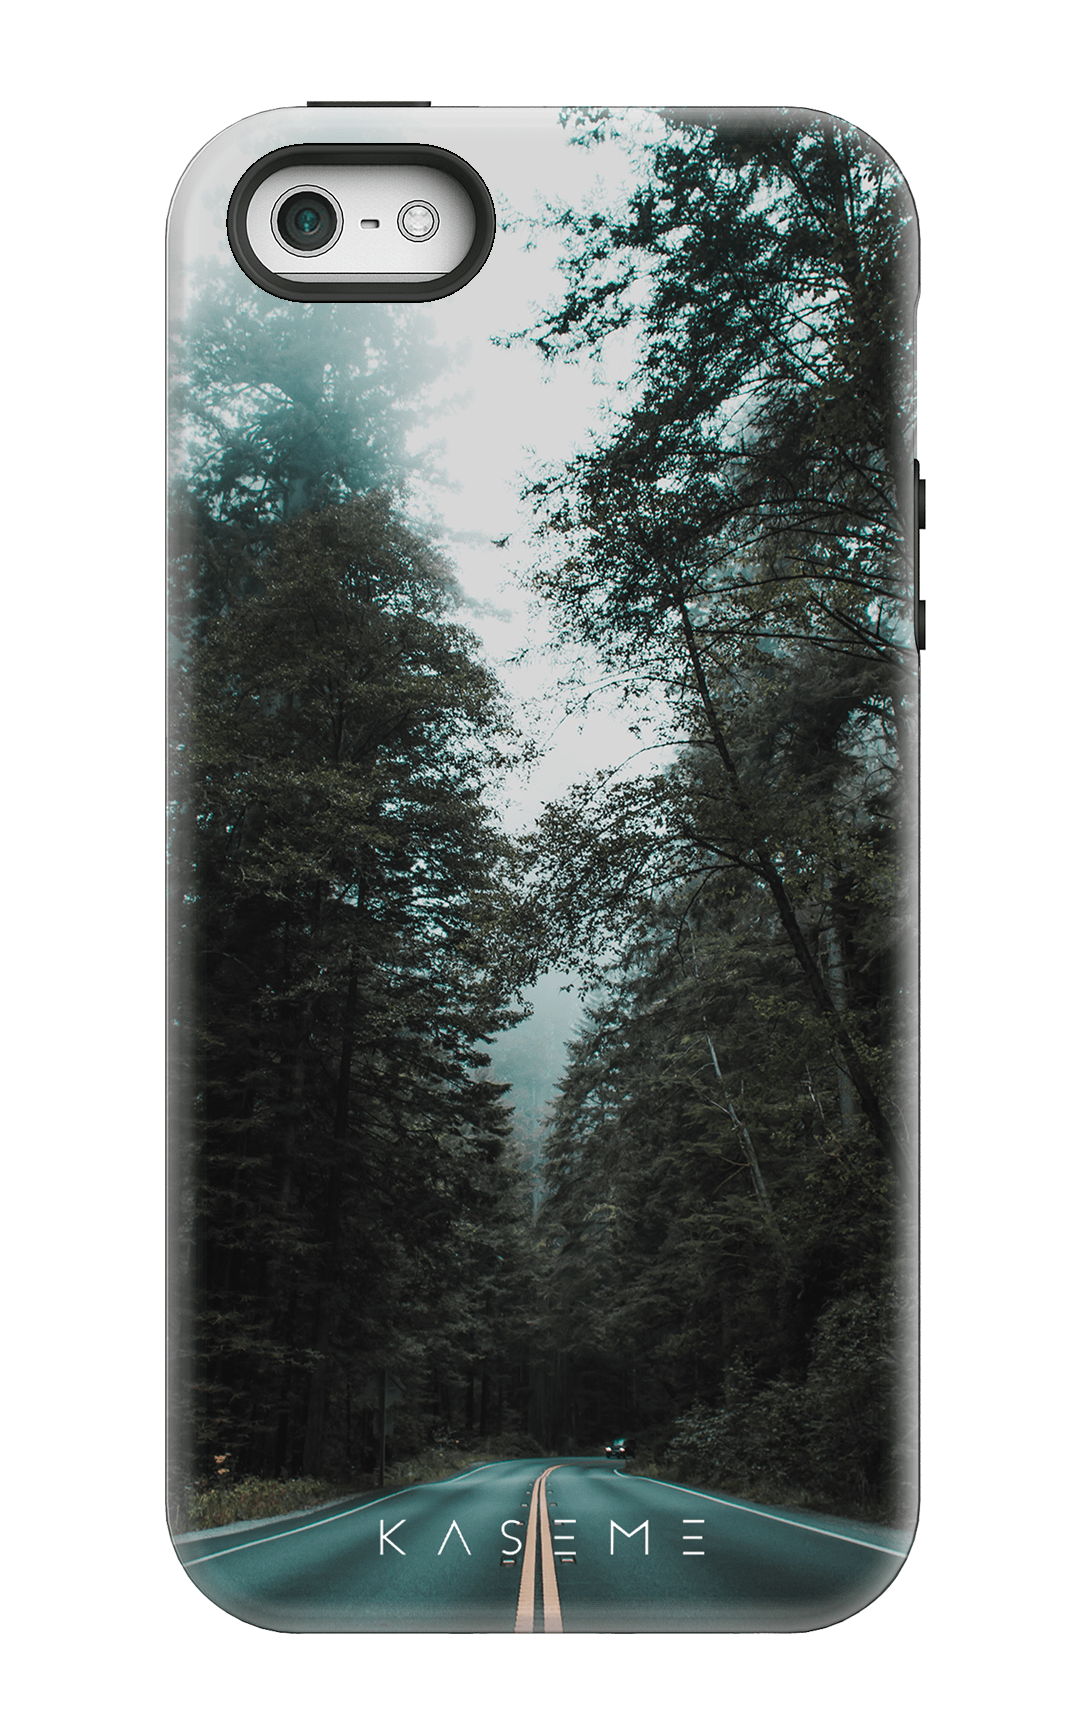 Sequoia - iPhone 5/5S/SE